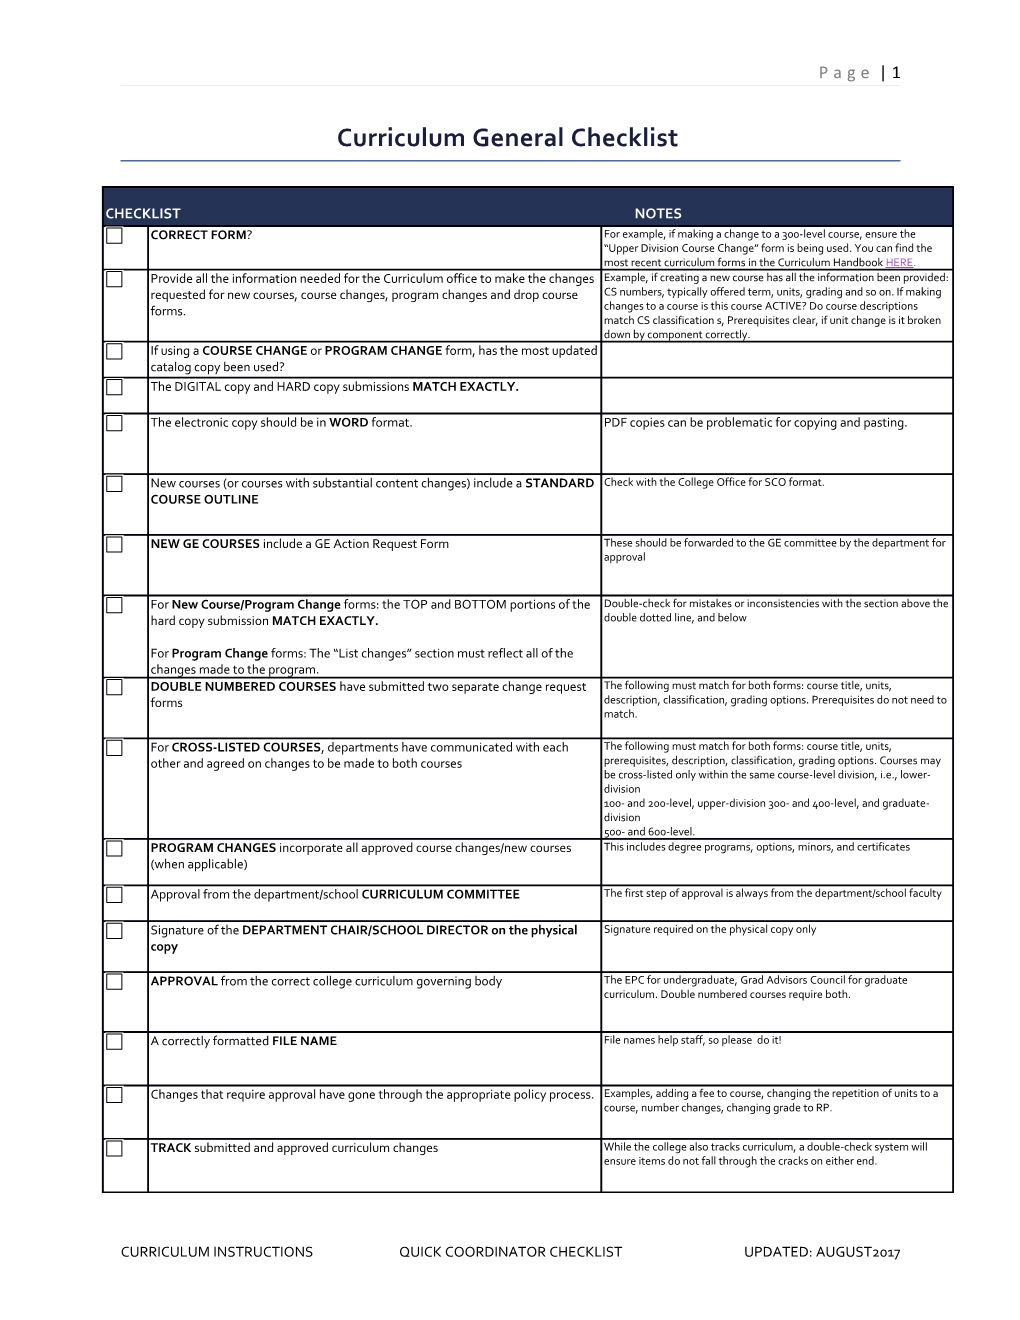 Curriculum General Checklist